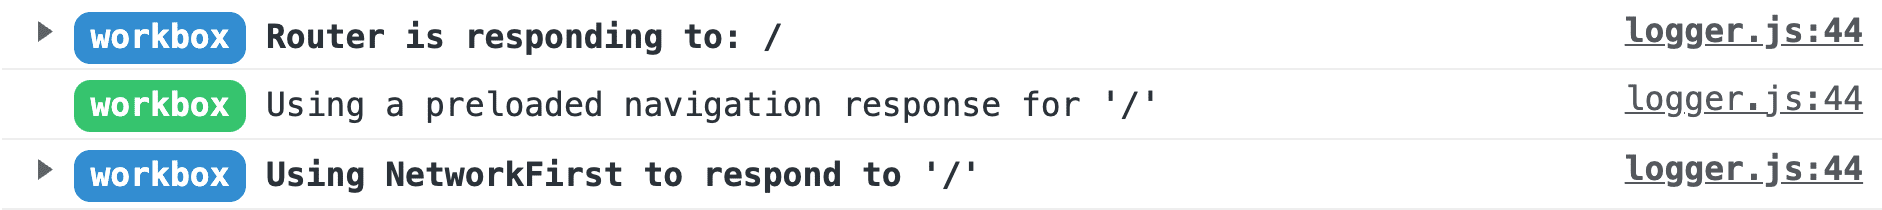 Chrome の DevTools のコンソールに表示された Workbox のログのスクリーンショット。上から順に、「ルーターが / に反応しています」、「/ にプリロードされたナビゲーション リクエストを使用しています」、「/ への応答に NetworkFirst を使用しています」というメッセージが表示されています。